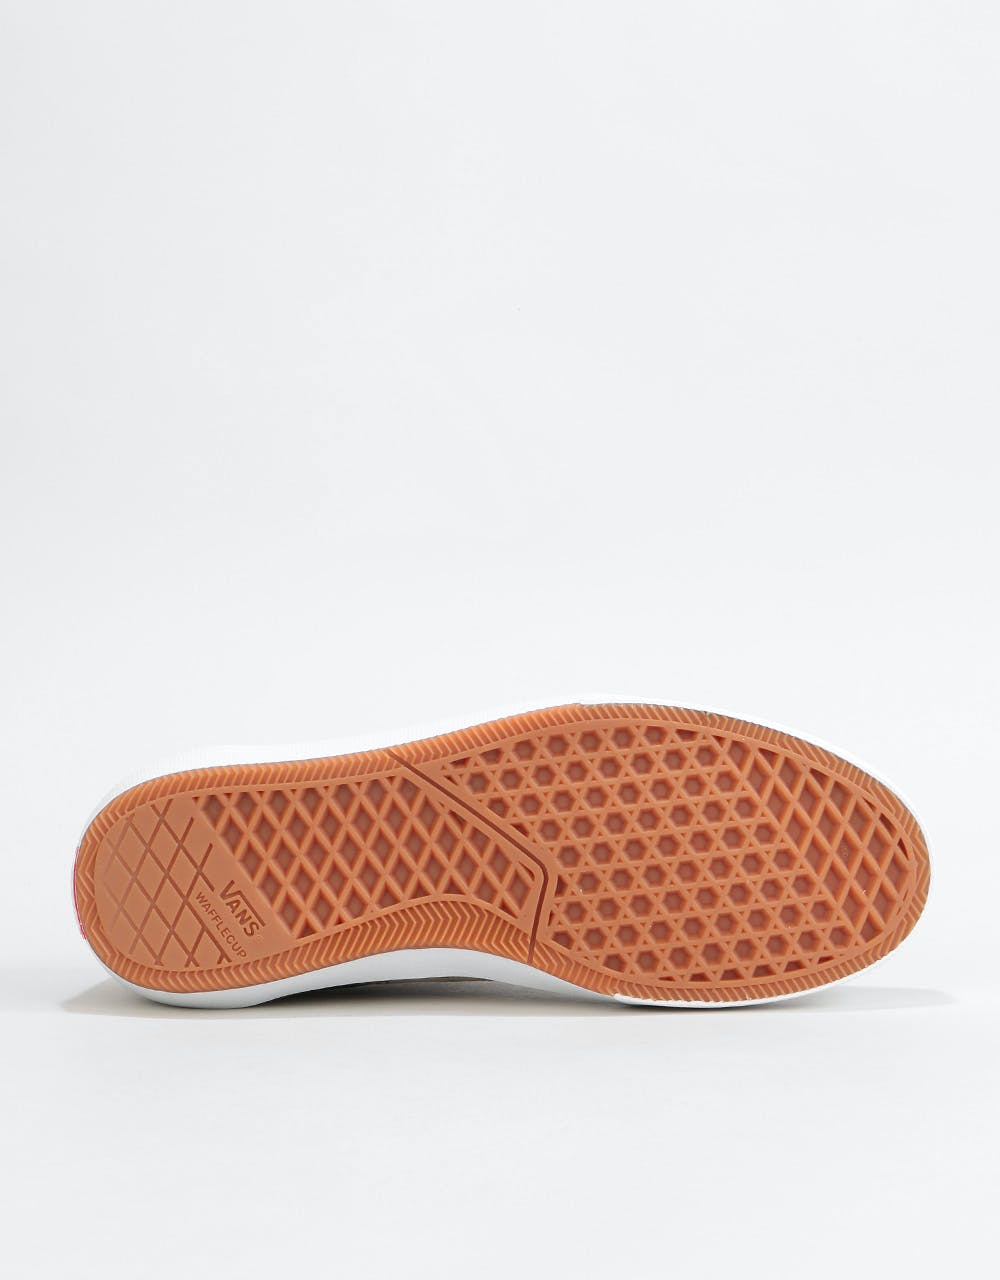 Vans Gilbert Crockett 2 Pro Skate Shoes - (Covert) Laurel Oak/White